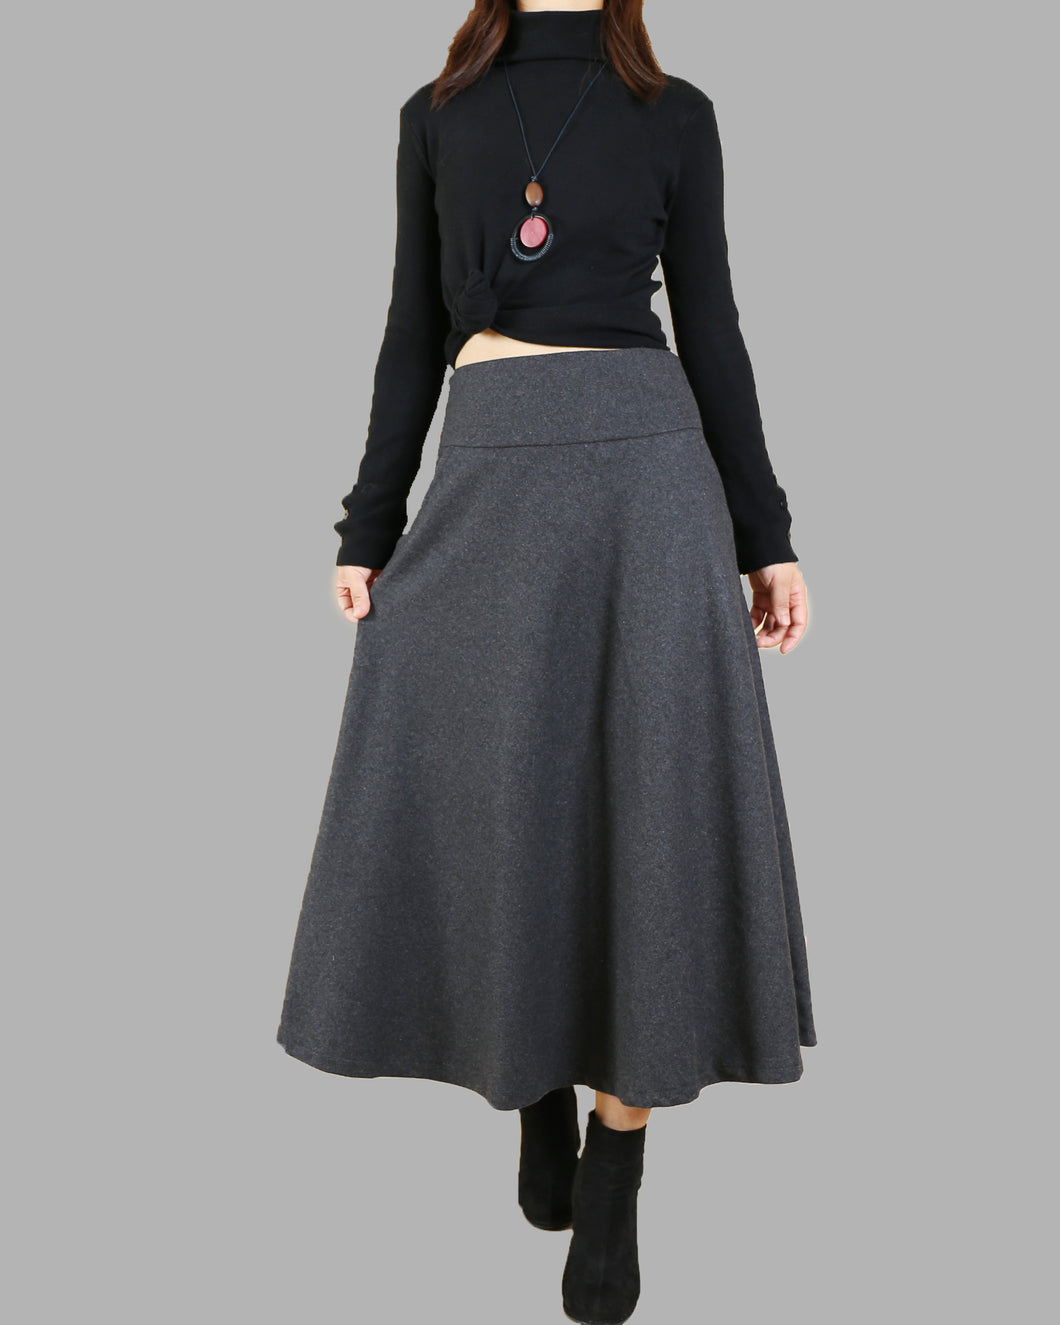 Women's woolen skirt/long customized skirt/winter skirt (Q1819)